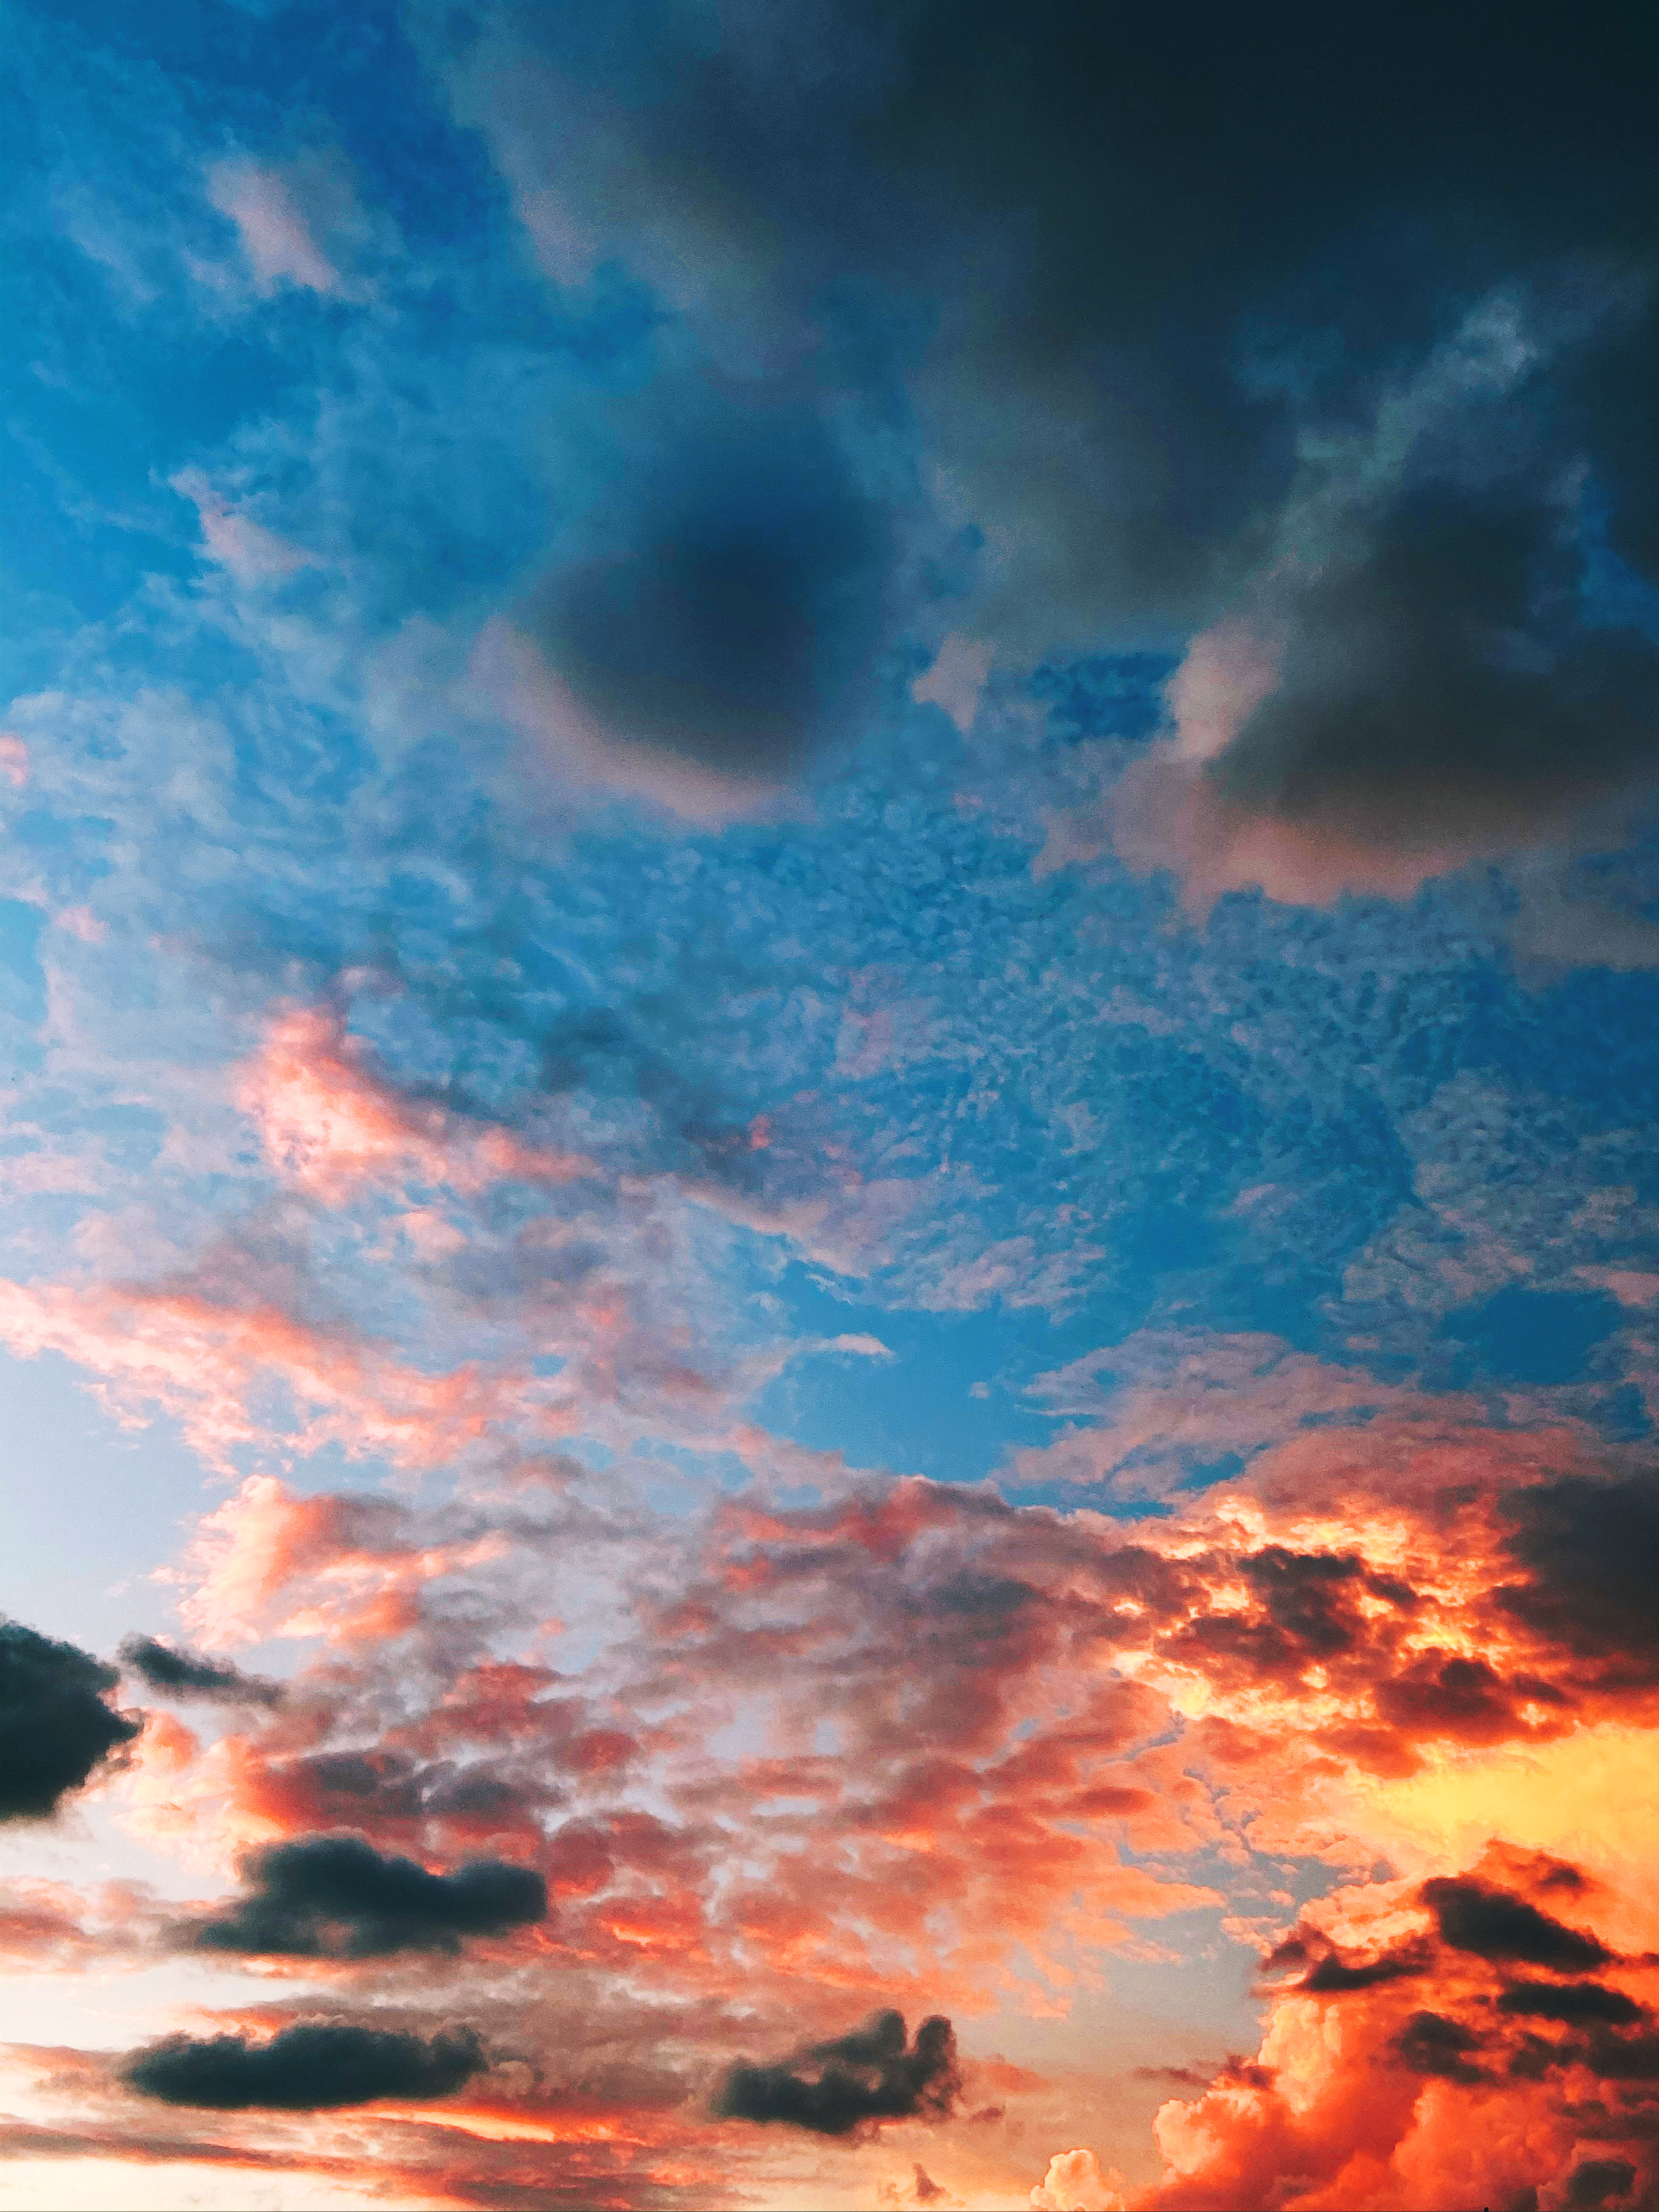 picsart freetoedit remixit sunset image by @eyesofbrax